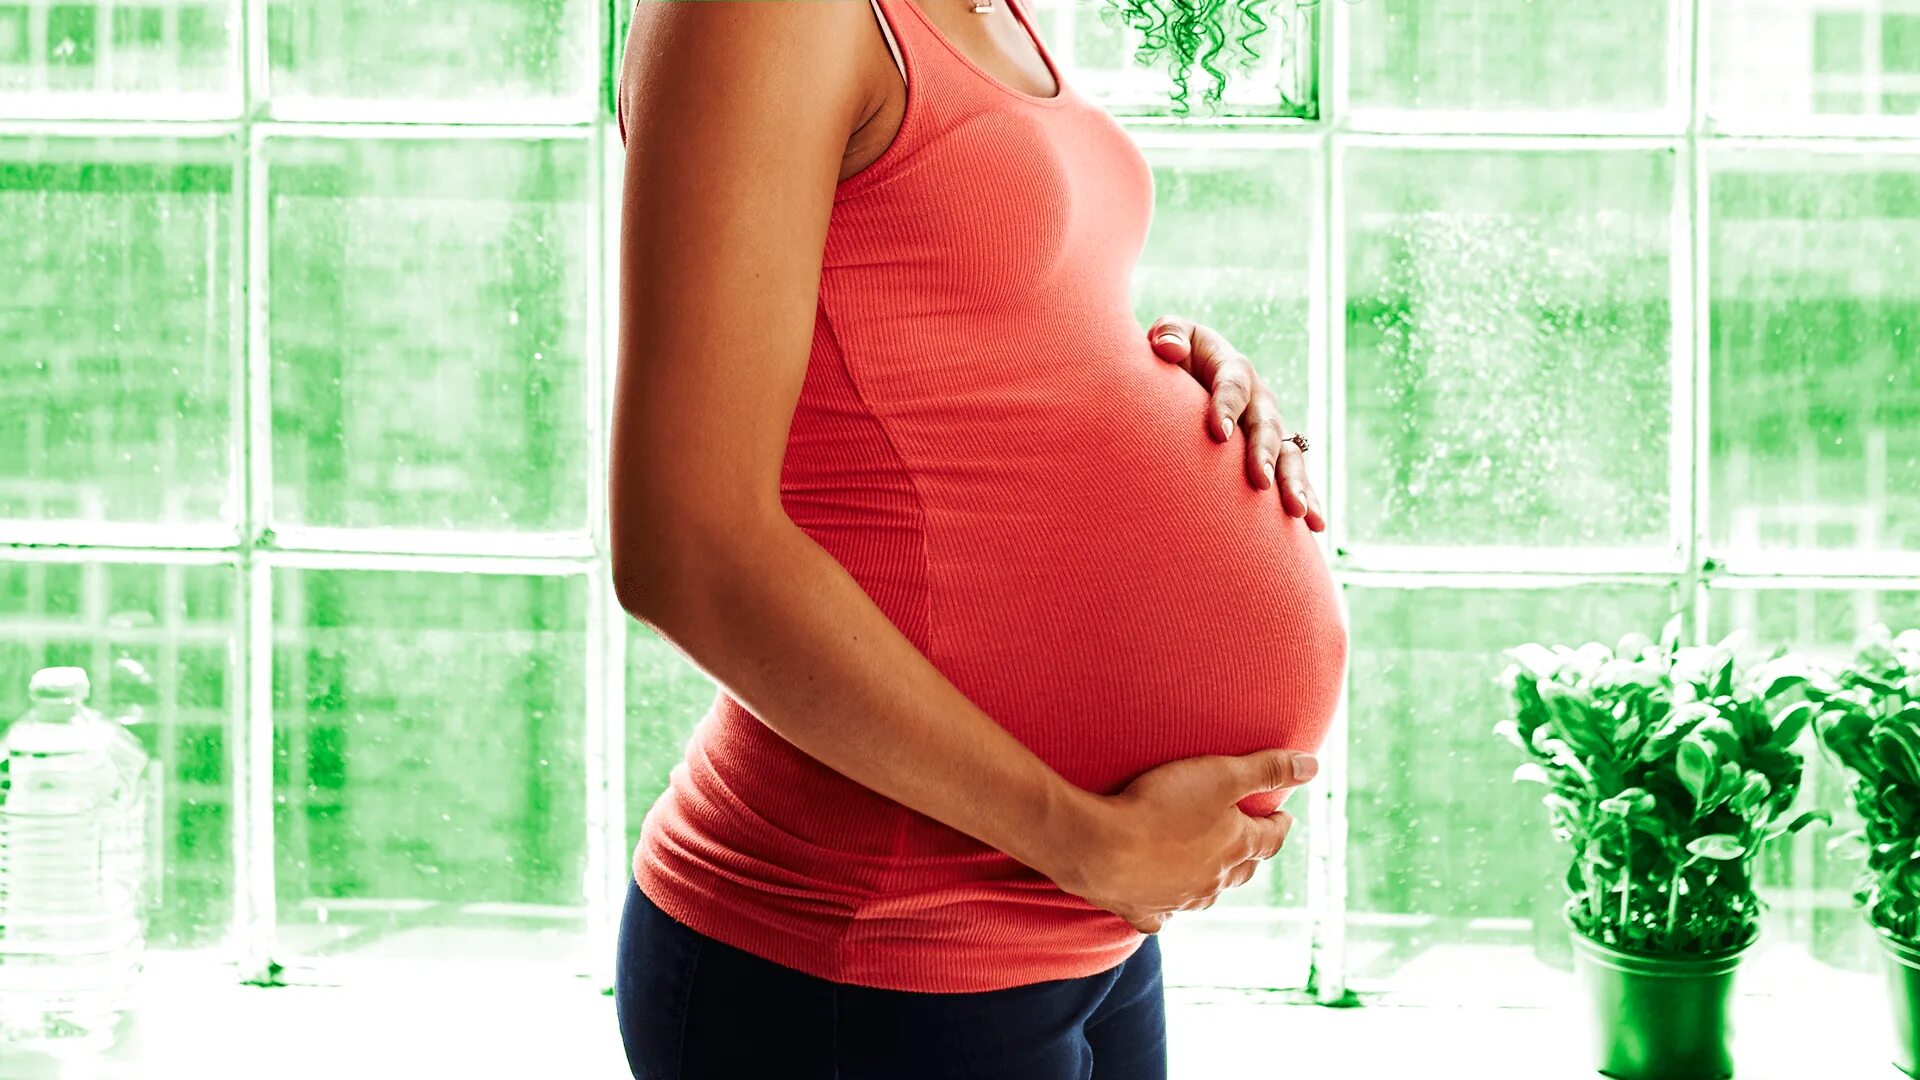 Изжога во 2 триместре. Беременность. Красивые беременные девушки. Беременность красивые фото. Беременность изжога.